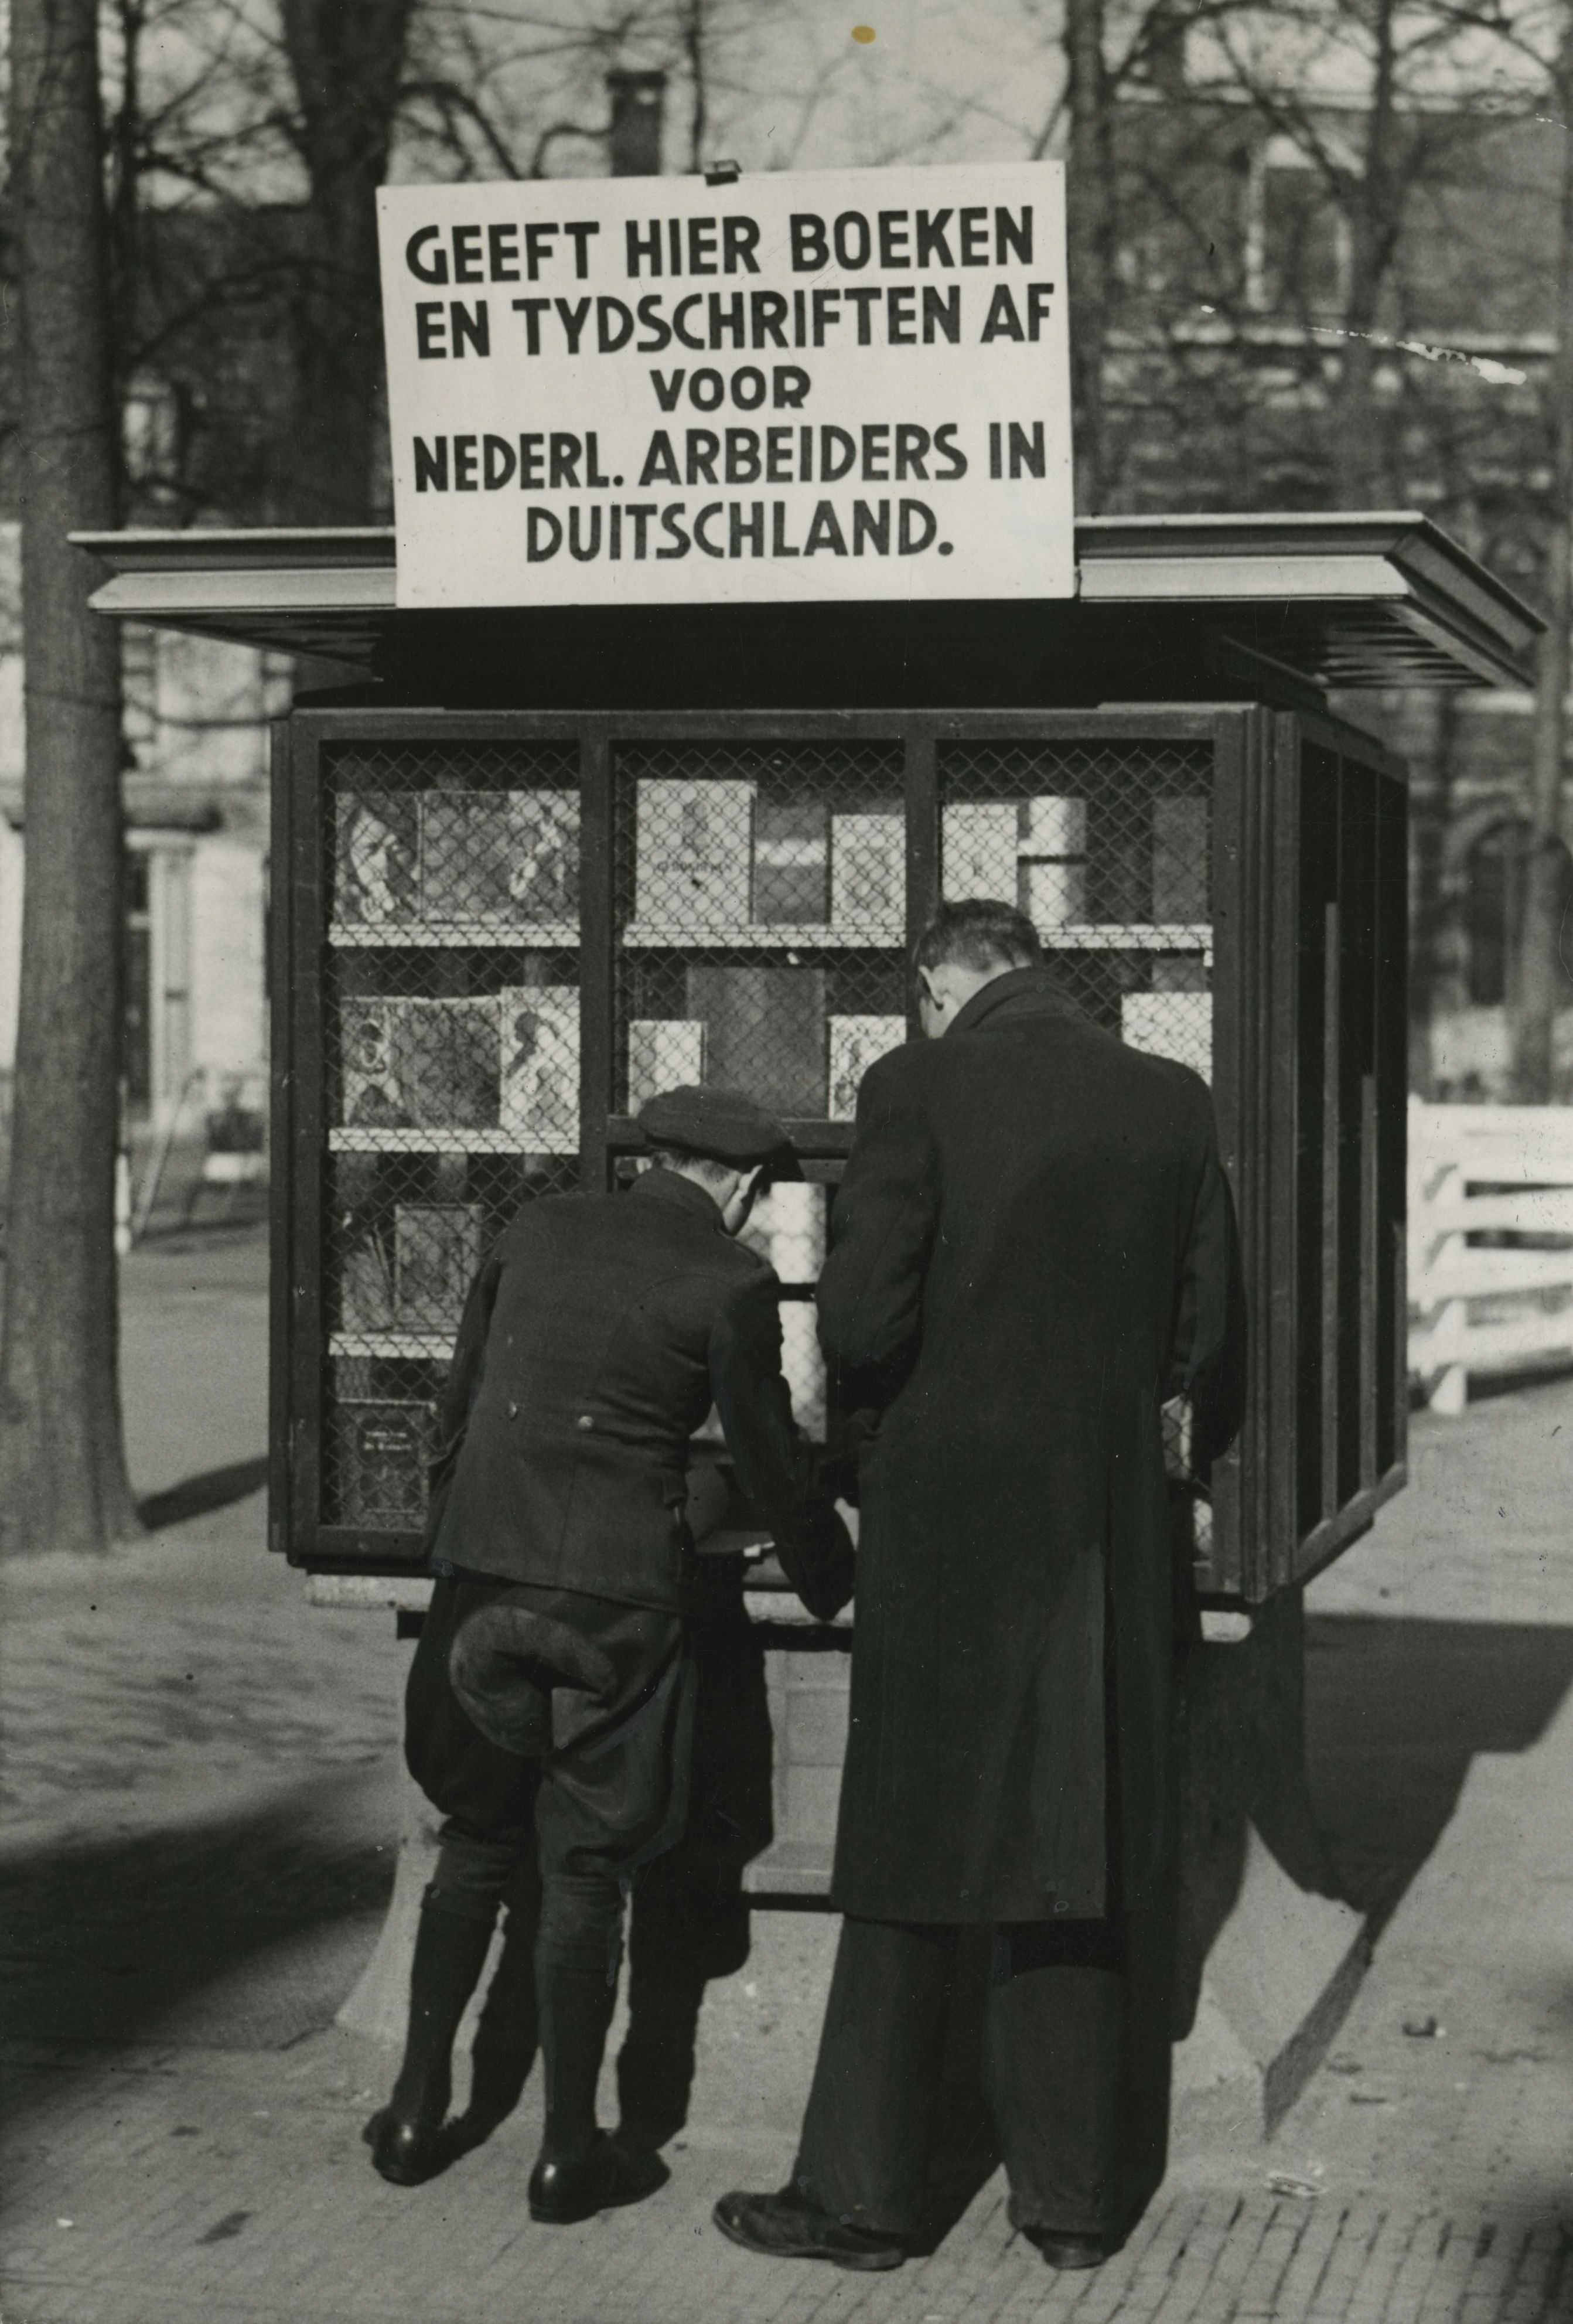 Foto van een kiosk waar boeken en tijdschriften kunnen worden gedoneerd aan Nederlandse arbeiders in Duitsland